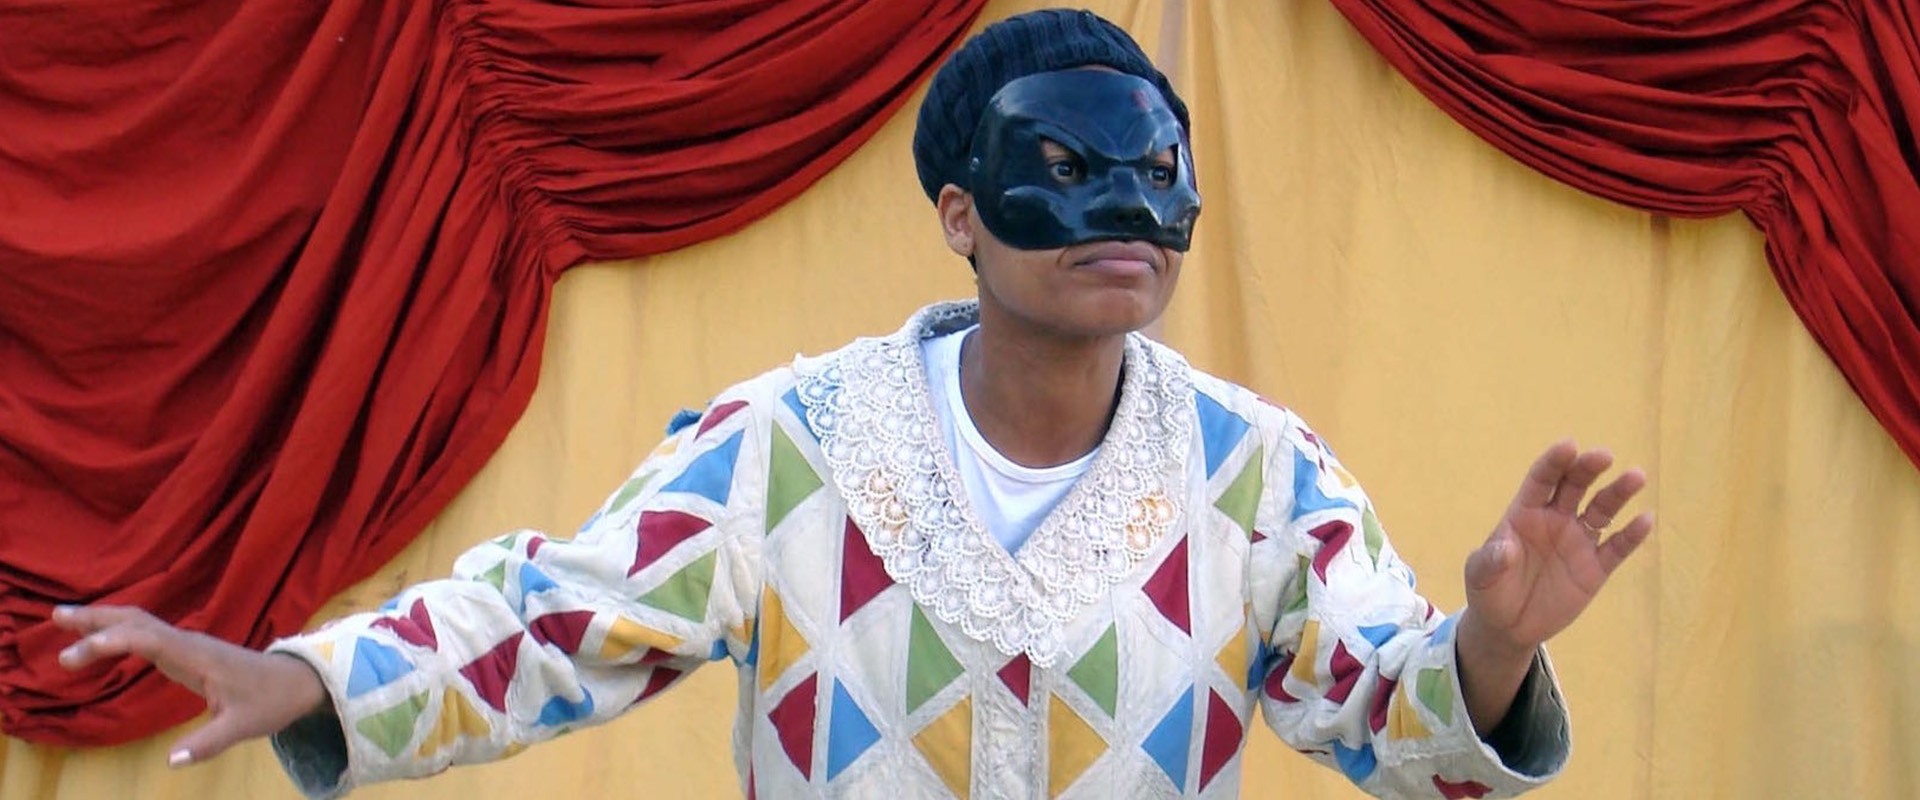 un homme joue sur scène avec un masque de commedia dell'Arte